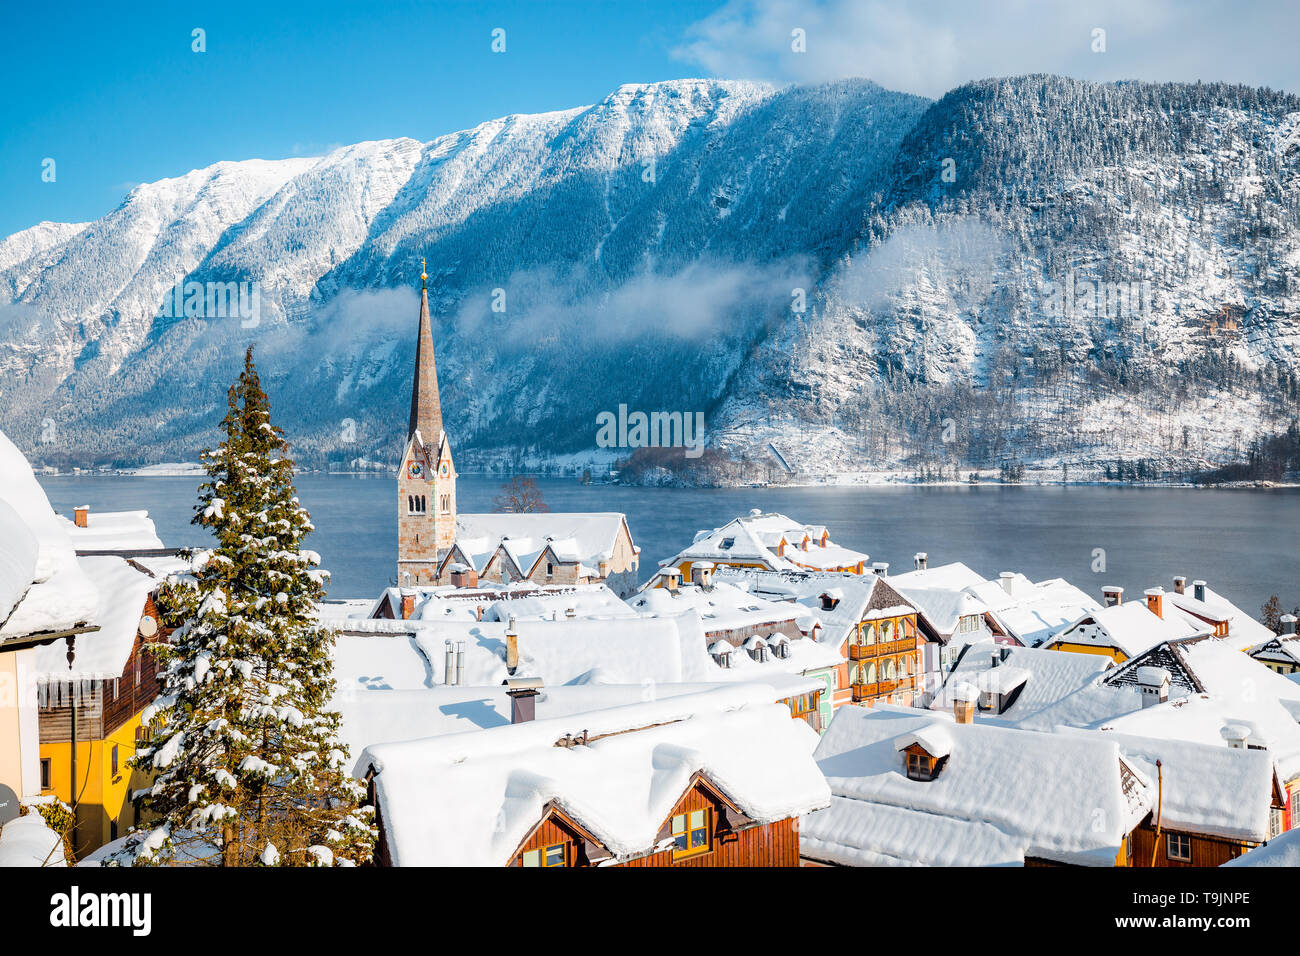 Vue panoramique sur le village historique de Hallstatt froid sur un beau jour ensoleillé, ciel bleu et nuages en hiver, Autriche Banque D'Images